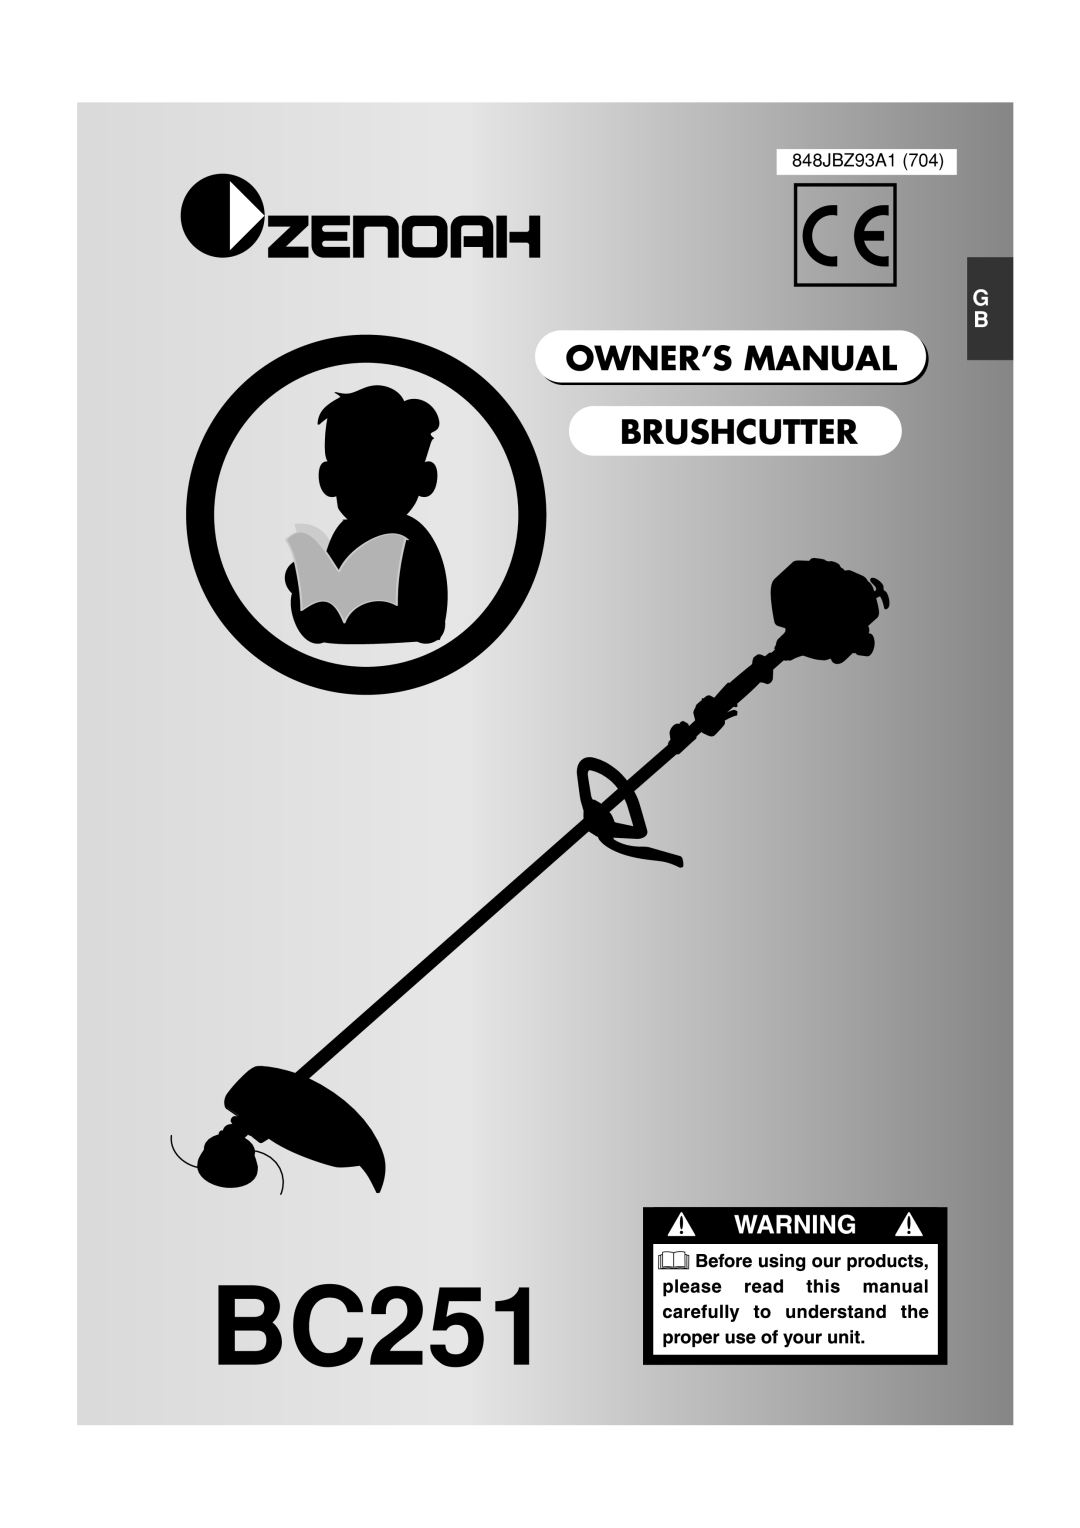 Zenoah BC251 owner manual 848JBZ93A1 